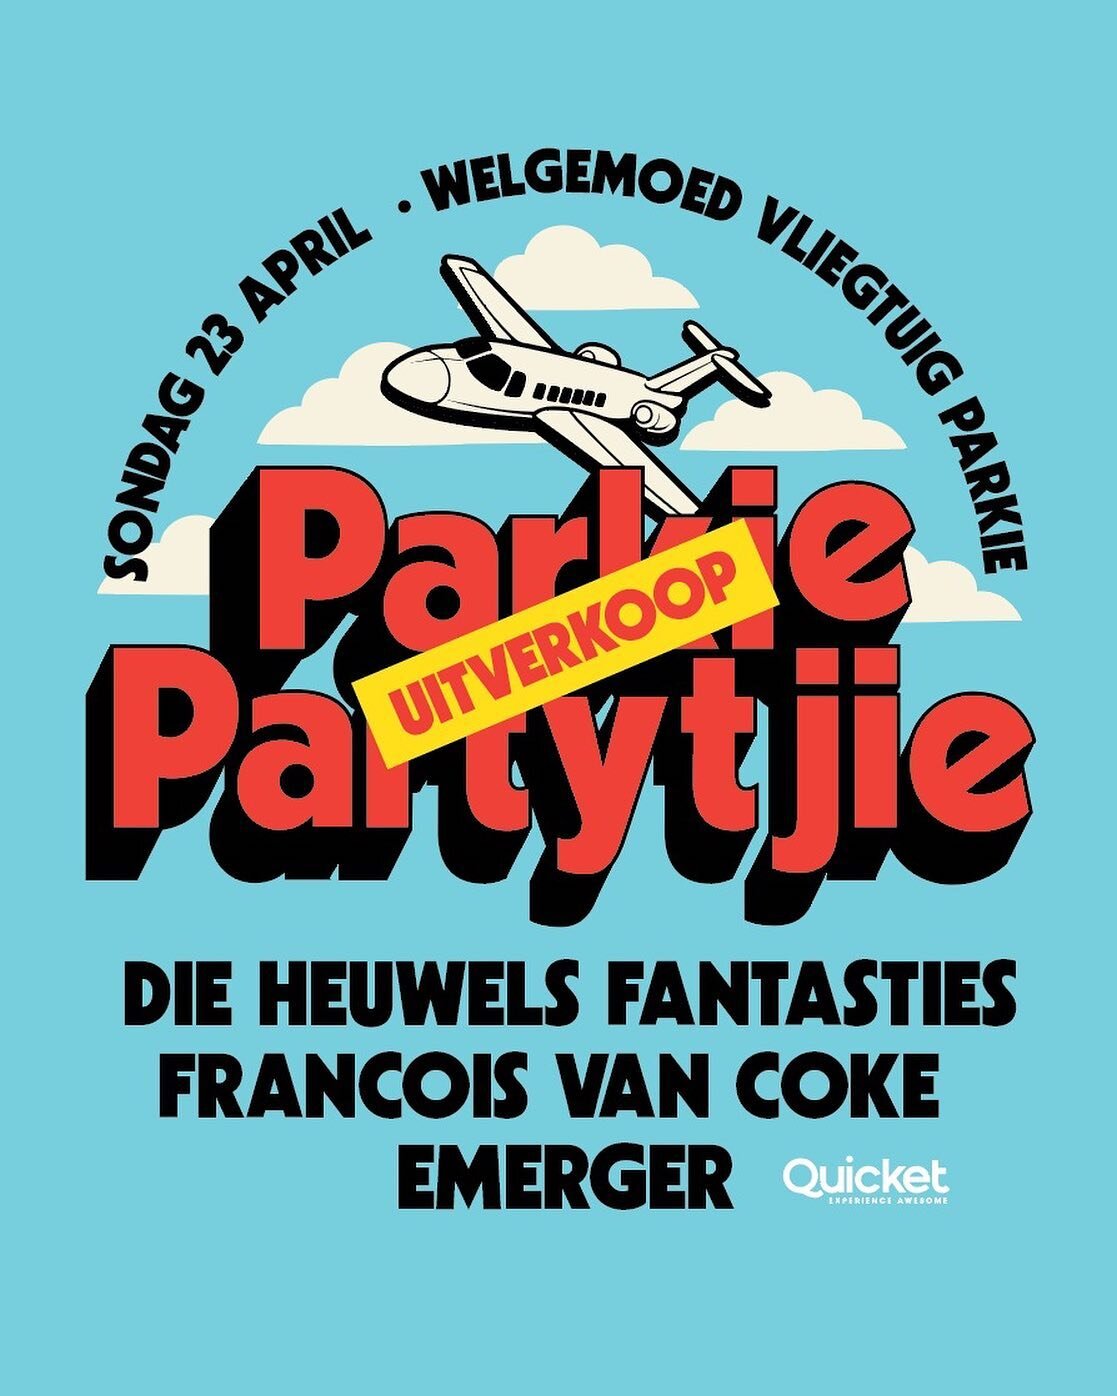 Parkie Partytjie ✈️ 🌳 🍺 🍷 
Hekke 12:00
Lineup:
14:30 - Werner van der Hoven
15:45 - Emerger
16:45- Die Heuwels Fantasties 
17:45 - Francois Van Coke
🌭 🍔 🍝 beskikbaar en vol kroeg ❤️